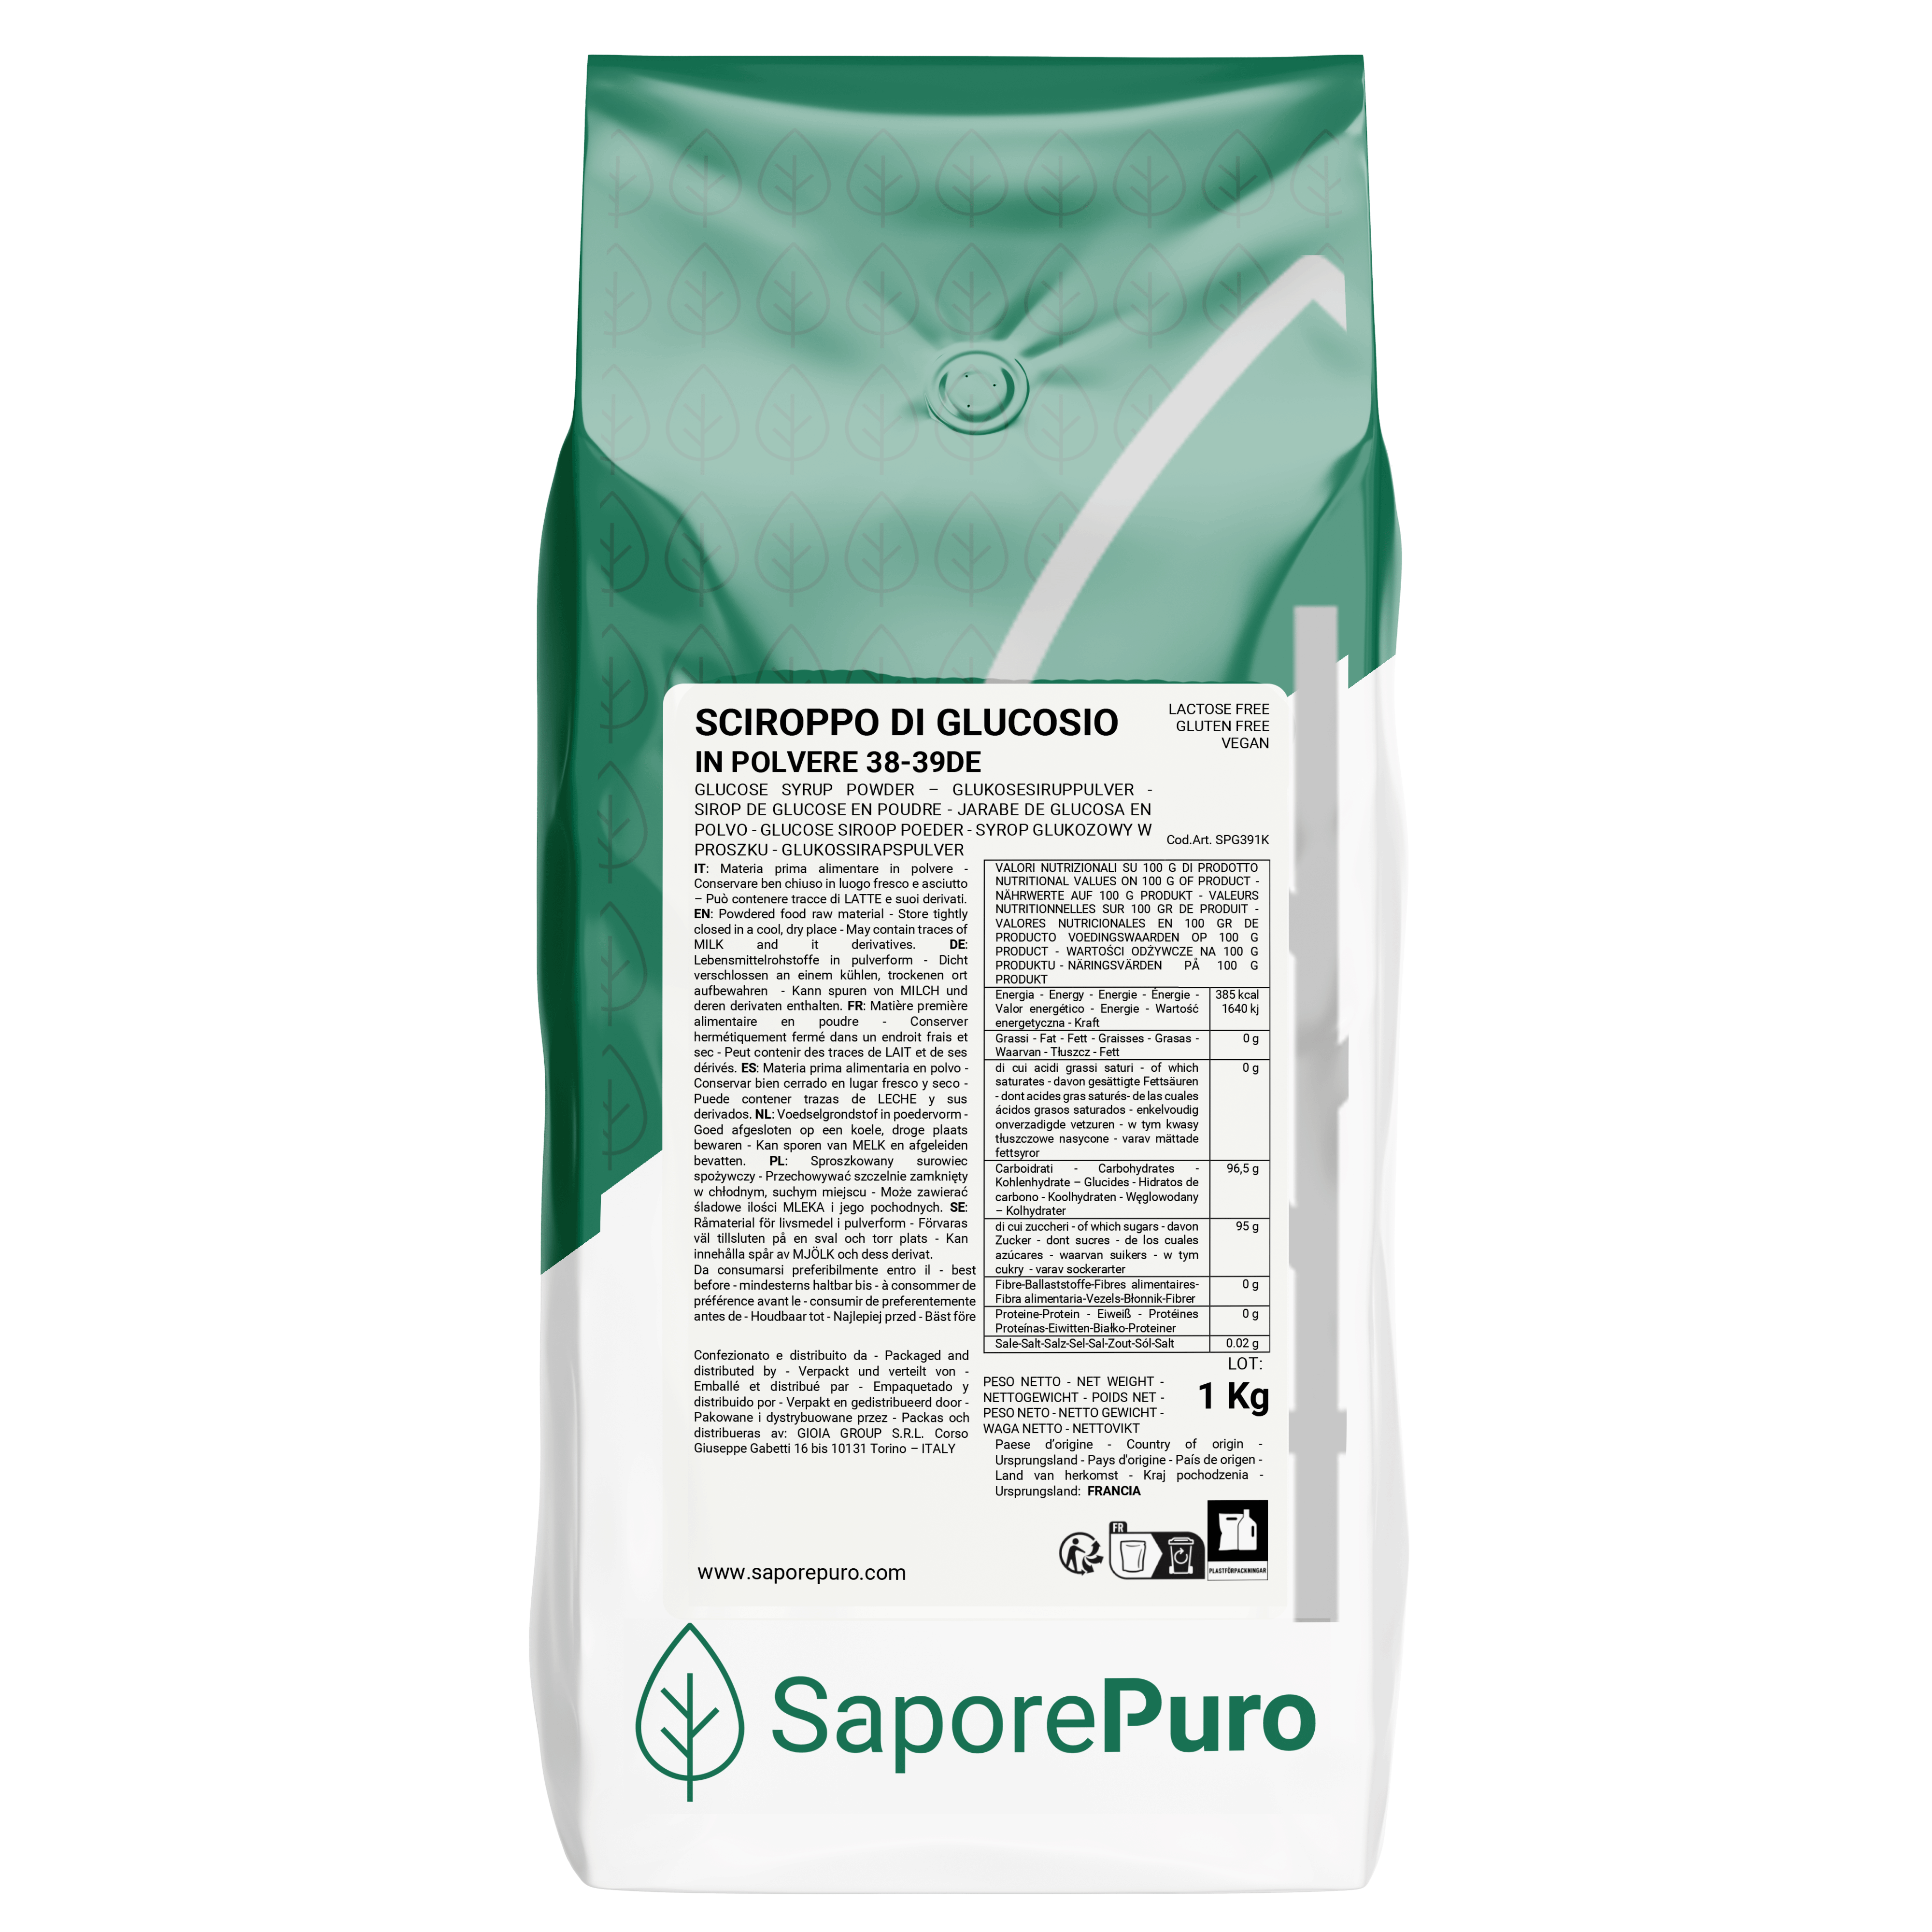 Sciroppo di glucosio in polvere 38-39DE - 1 kg - Made in France – SaporePuro